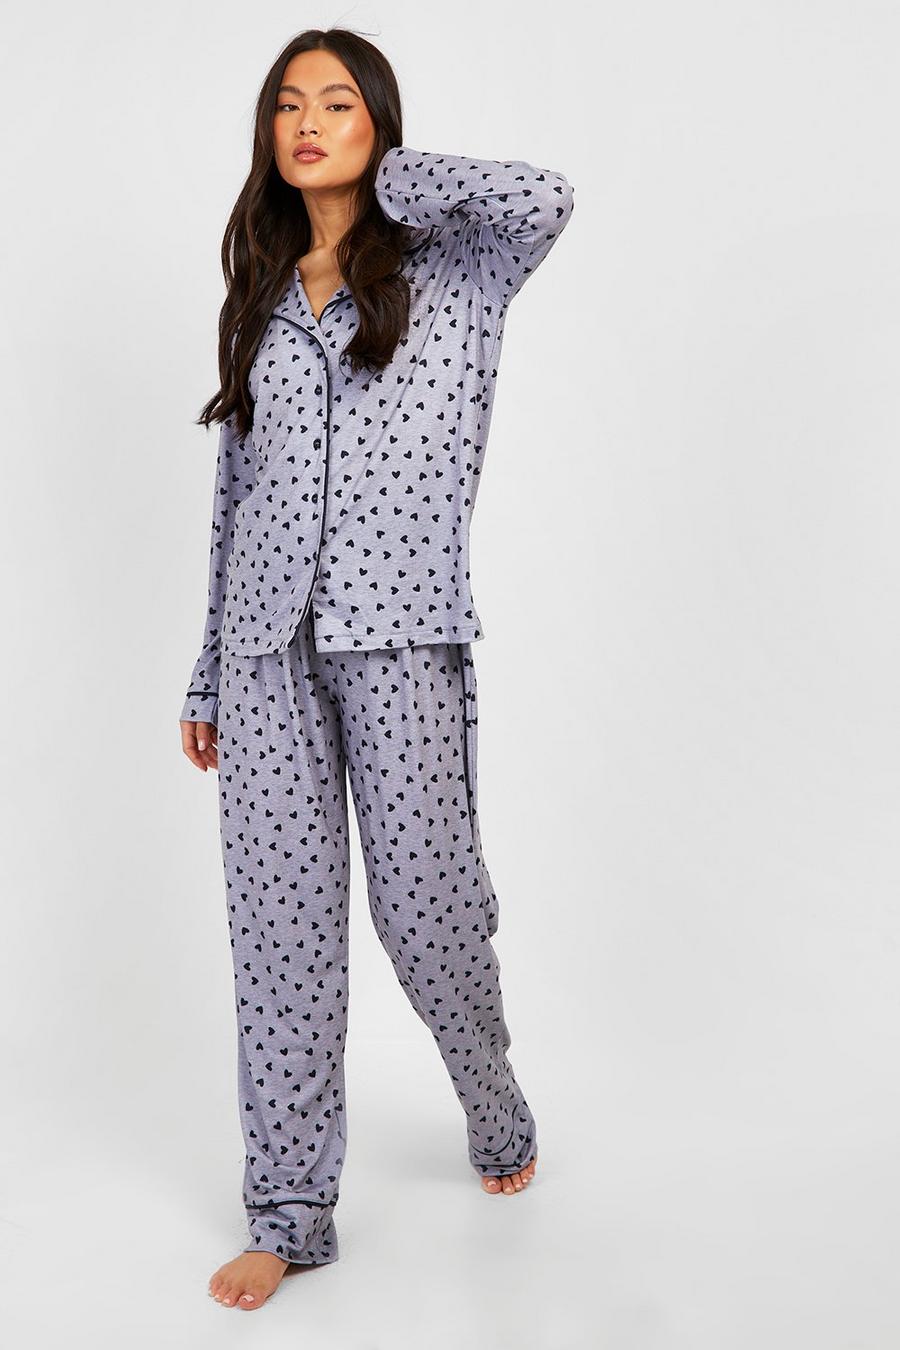 Grey marl Heart Print Jersey Button Up Pajama Pants Set